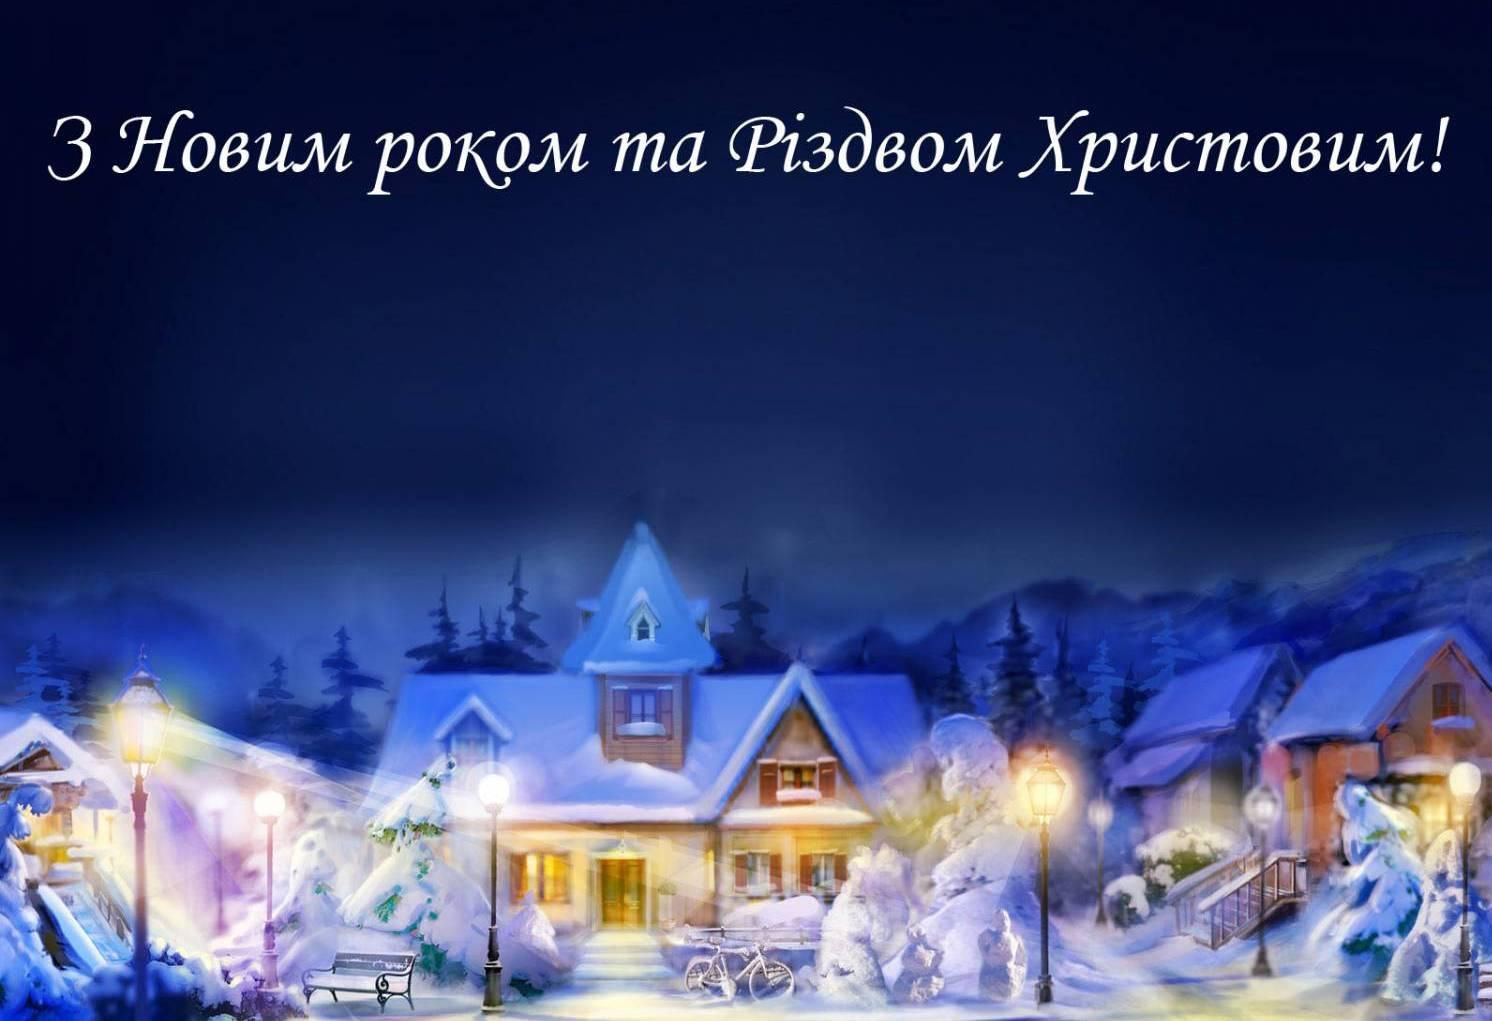 Привітати з Новим роком та Різдвом Христовим українською мовою
